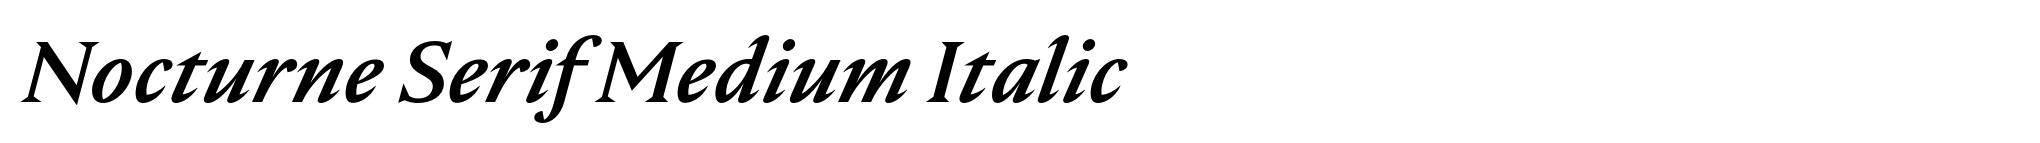 Nocturne Serif Medium Italic image